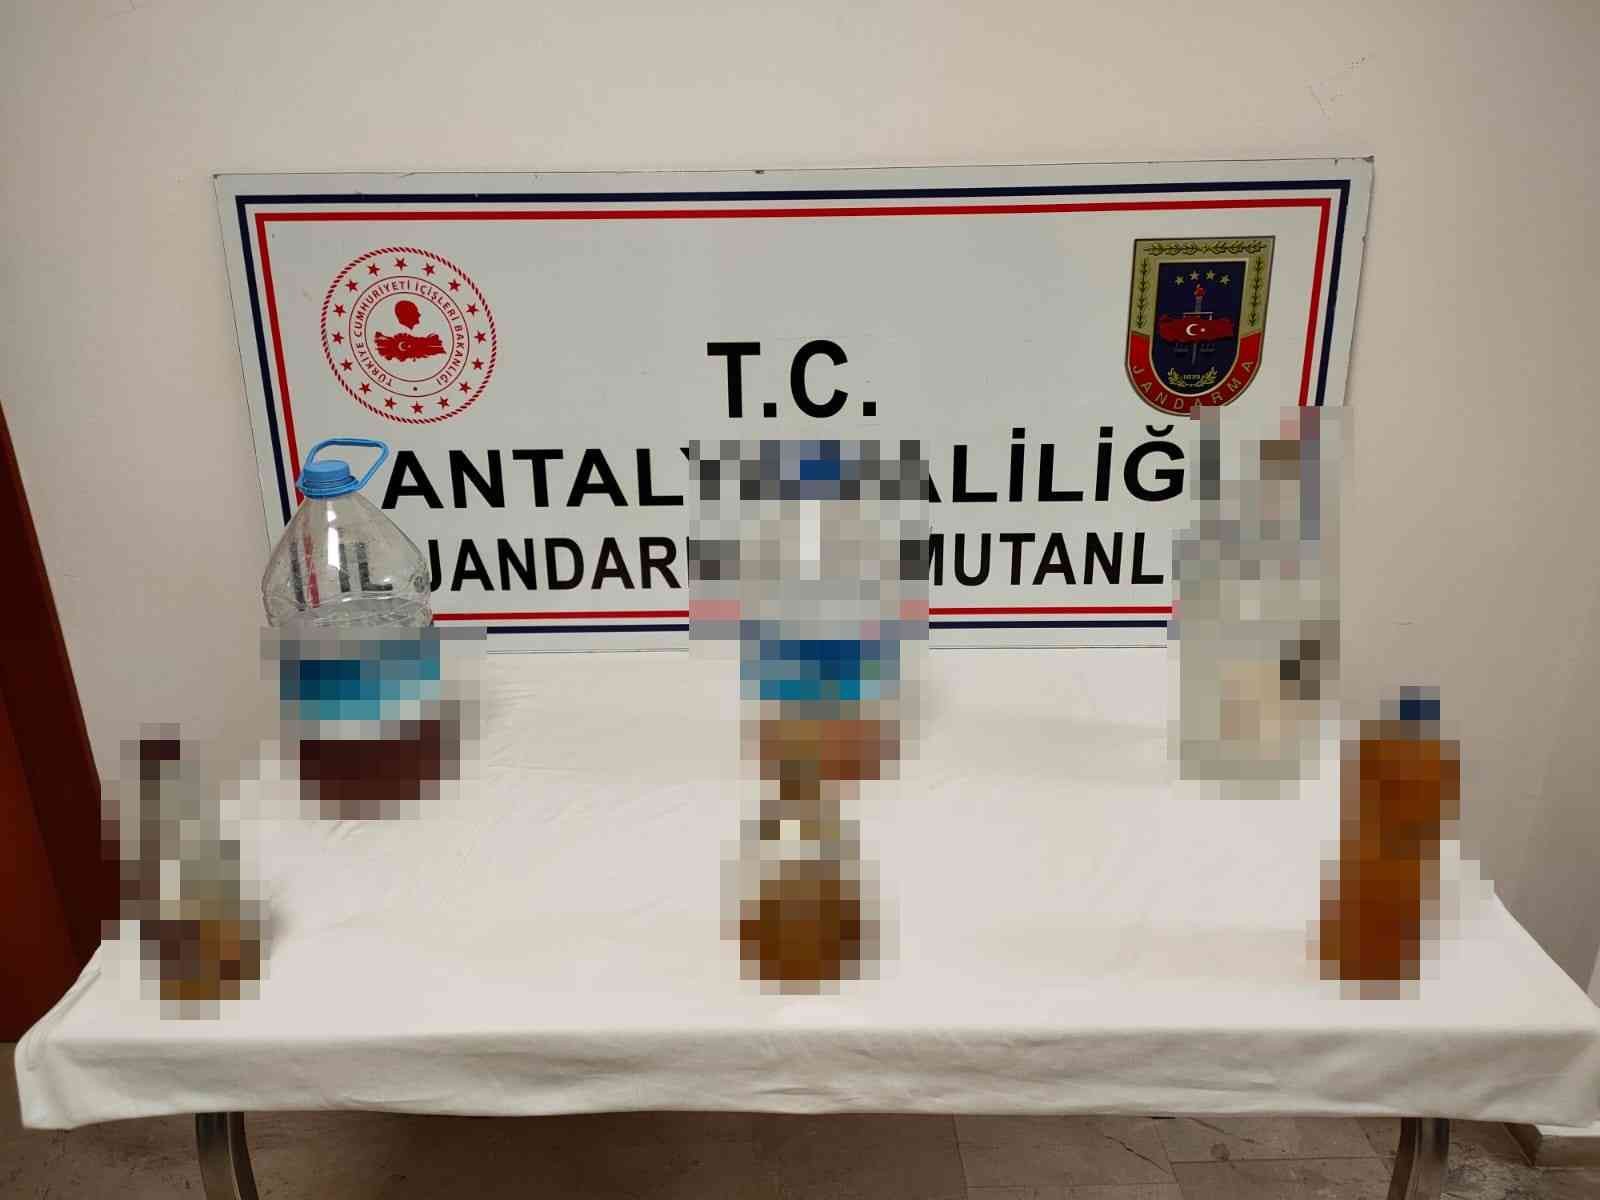 Manavgat'taki kaçak Alkol operasyonunda 12 litre kaçak içki ele geçirildi